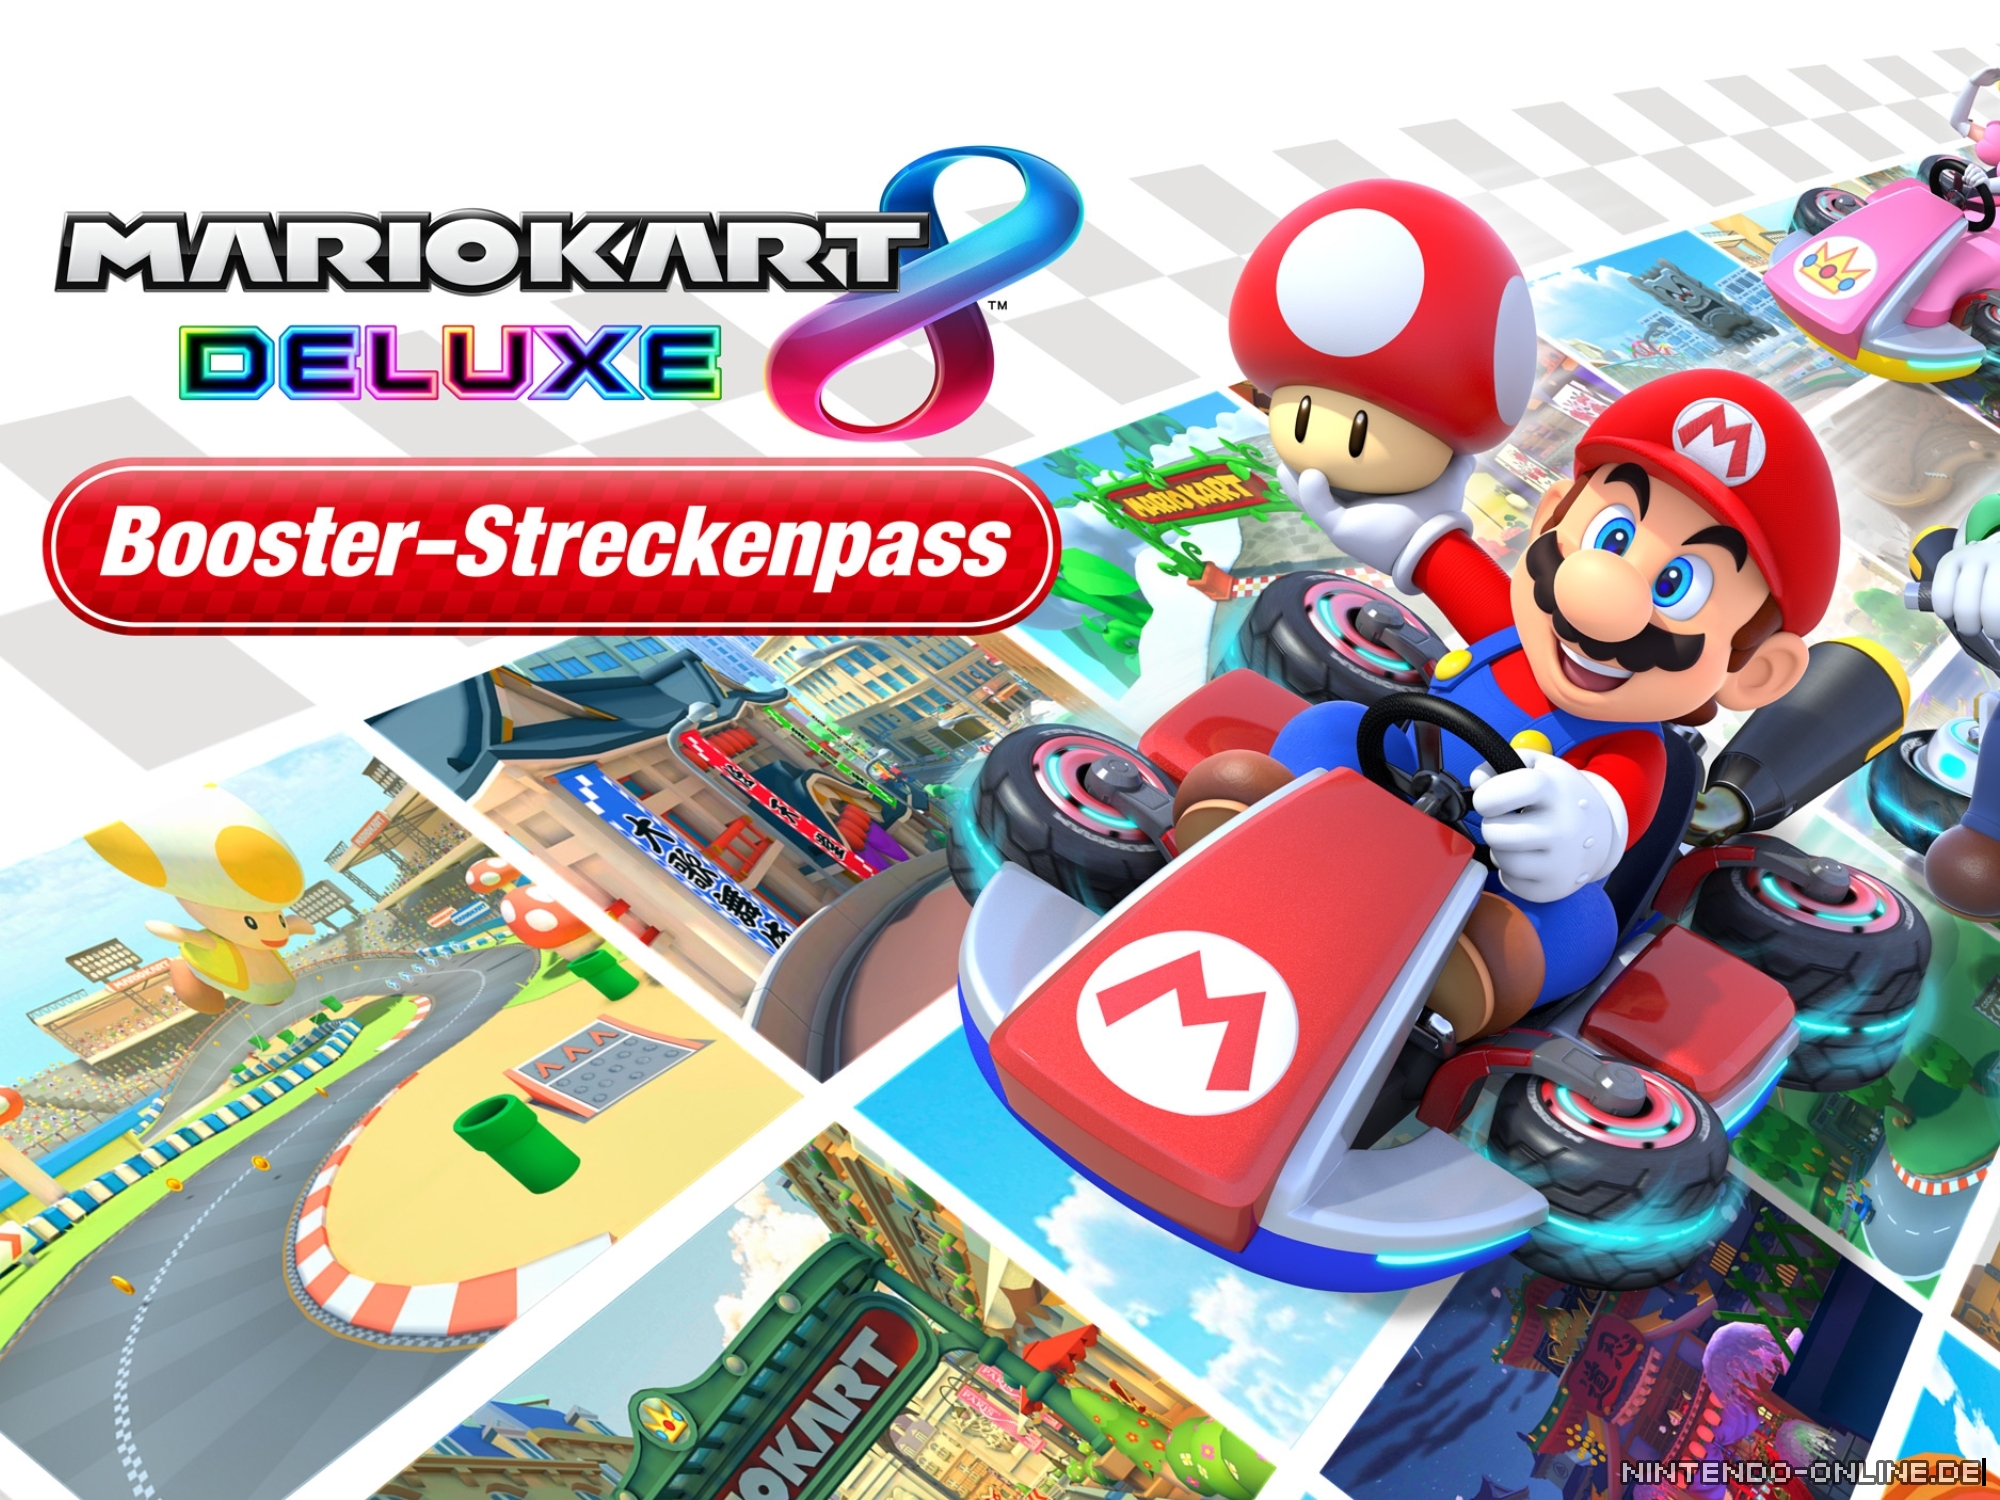 Mario Kart 8 Deluxe Booster-Streckenpass: Alle Infos zum DLC und den  Strecken 